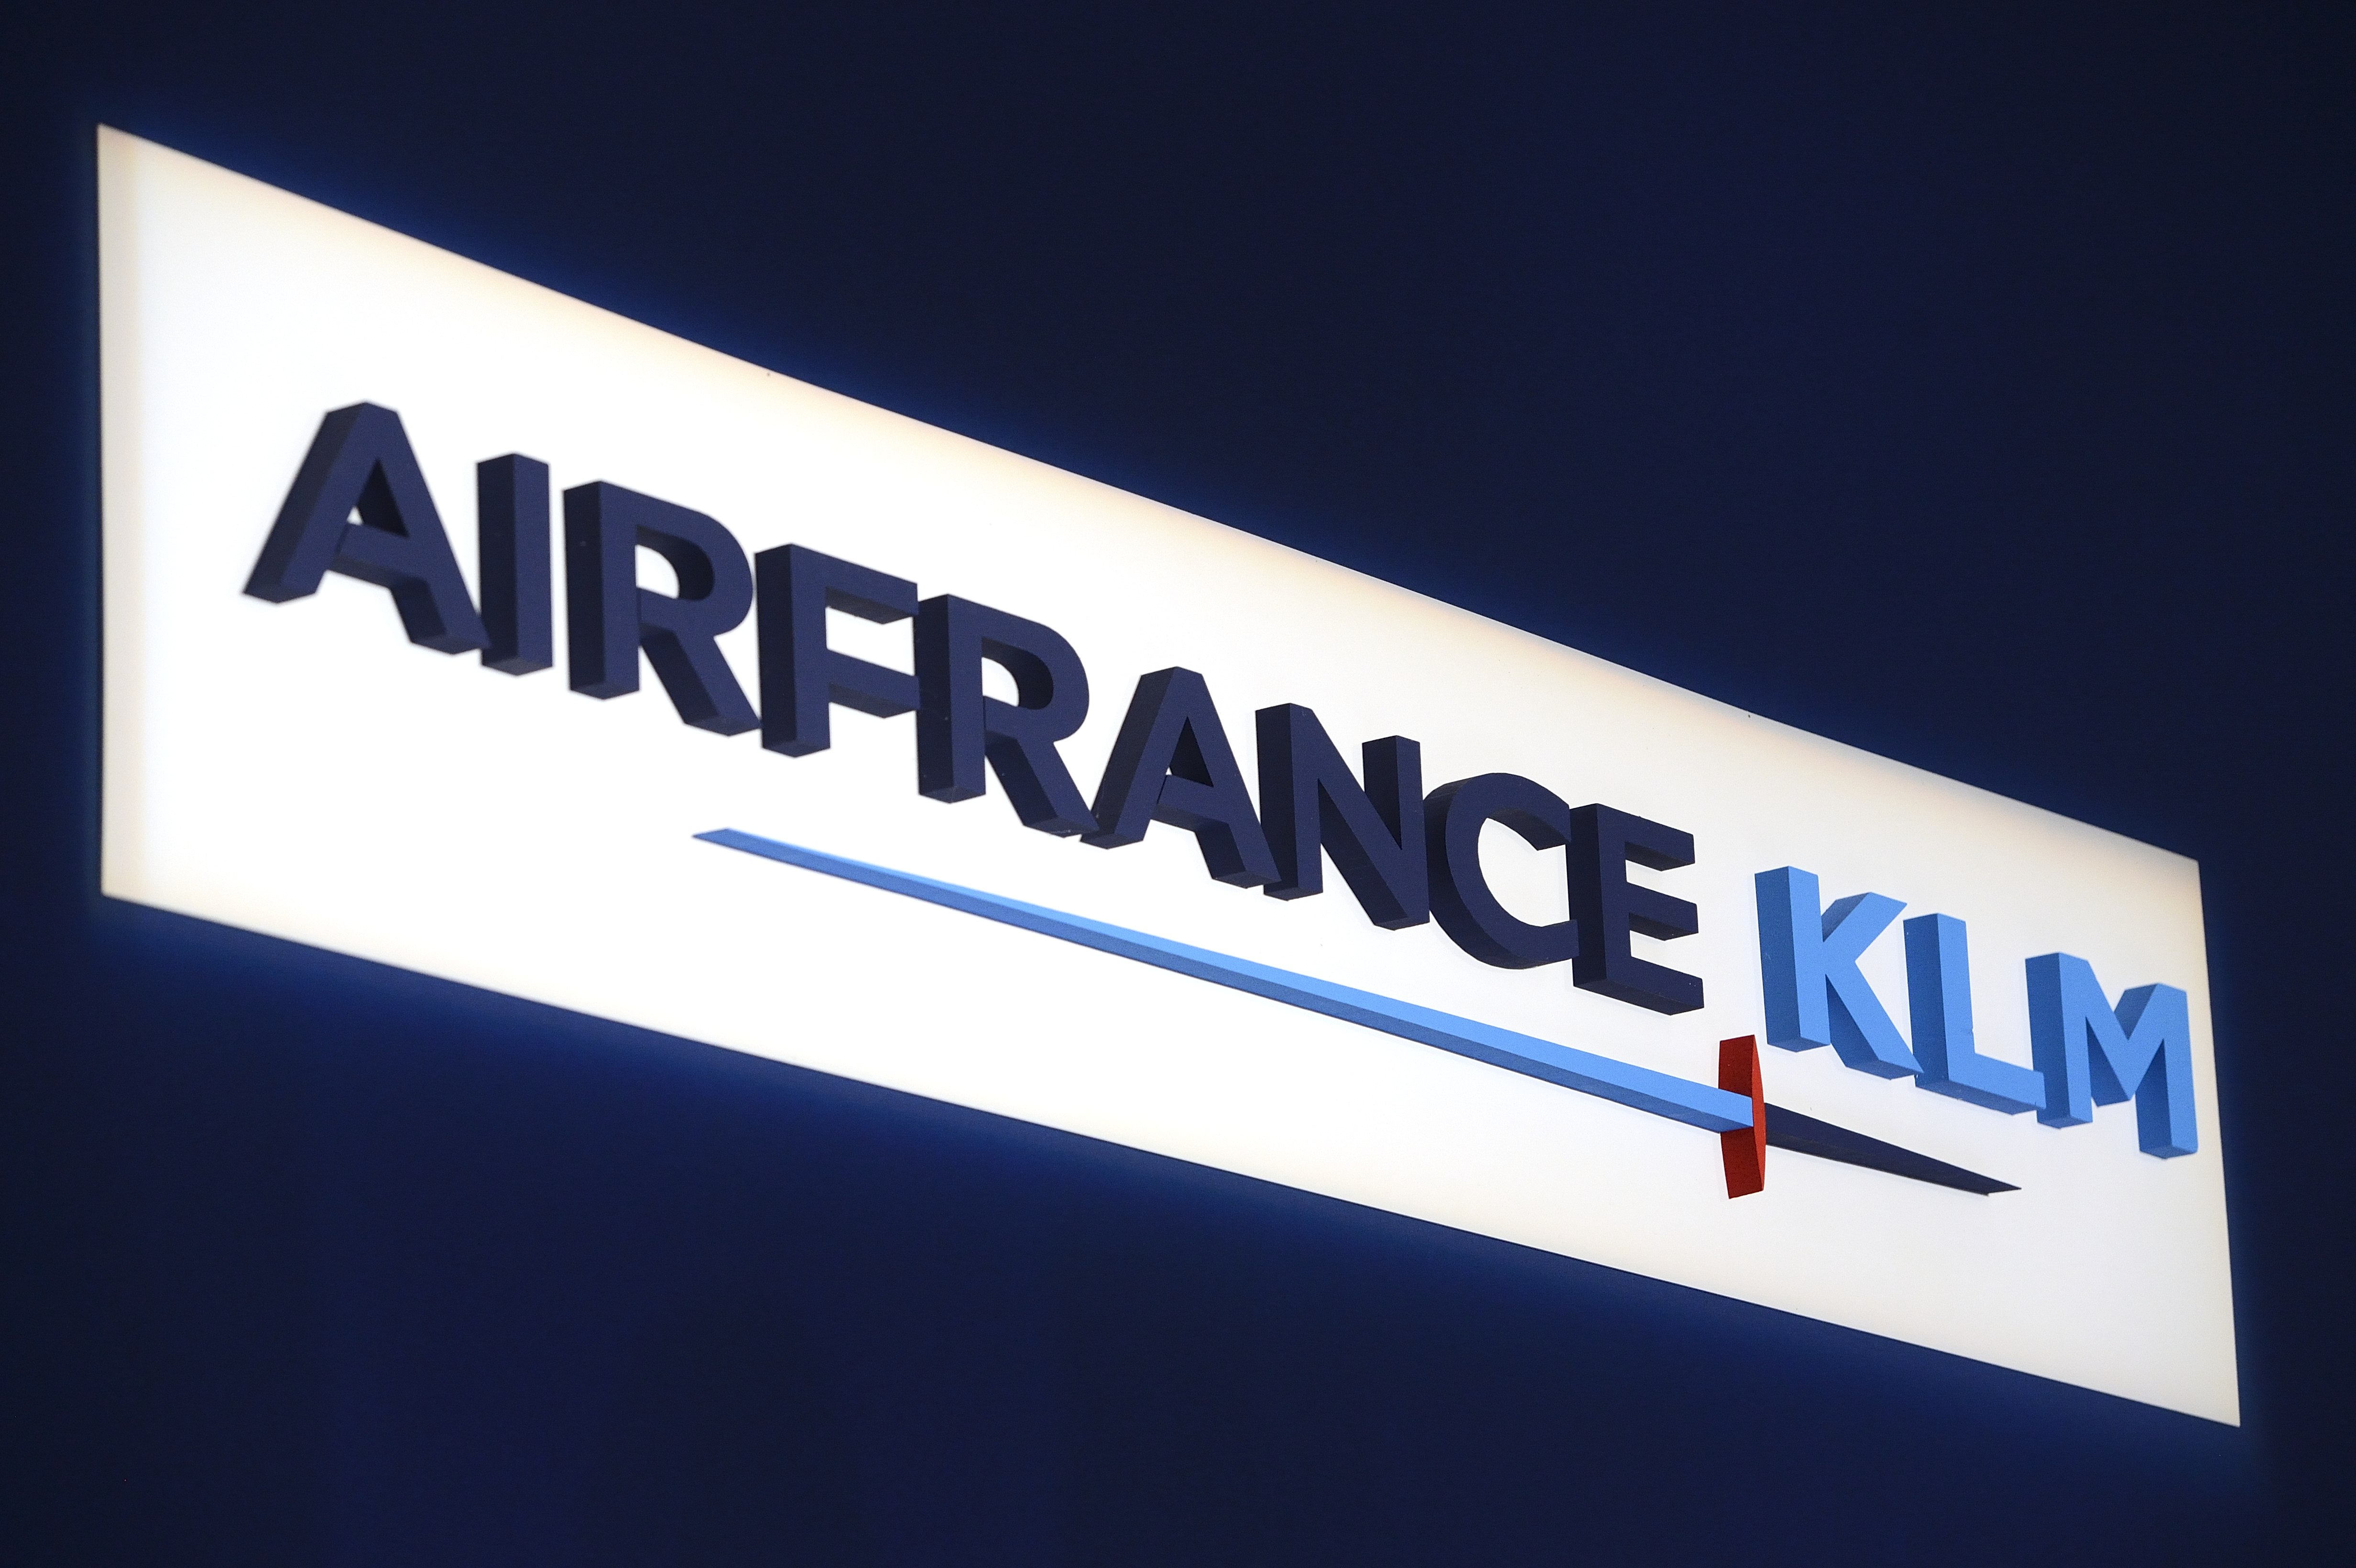 Air France-KLM heeft in oktober, de maand na de verlammende staking van Franse piloten, de draad weer opgepakt met een toename van het passagiersvervoer. Dat groeide met in totaal 2 procent op jaarbasis, terwijl de capaciteit met 1,2 procent toenam, zo meldde de luchtvaartgroep woensdag. Meer reizigers per vliegtuig dan concurrenten Doordat de vraag sterker toenam dan het aantal beschikbare stoelen, steeg de gemiddelde bezettingsgraad. Gemiddeld was vorige maand 84,7 procent van de stoelen aan boord bezet, een verbetering met 0,7 procentpunt ten opzichte van dezelfde periode vorig jaar. Ter vergelijking: Bij de concurrent British Airways-Iberia waren 81 procent van de stoelen bezet met reizigers. Bij de Duitse luchtvaartmaatschappij Lufthansa lag dat aantal op 80,6 procent. In vergelijking met deze twee belangrijke Europese concurrenten waren bij Air-France KLM de meeste vliegstoelen bezet door reizigers. Sterke vraag vluchten naar Noord- en Latijns-Amerika Met name op vluchten van en naar Noord- en Latijns-Amerika nam de vraag sterk toe. De sterkste verbetering van de bezettingsgraad, een belangrijke graadmeter van efficiëntie in de luchtvaart, deed zich evenwel voor in het Europese netwerk. Daar werd minder capaciteit ingezet terwijl de vraag toenam.